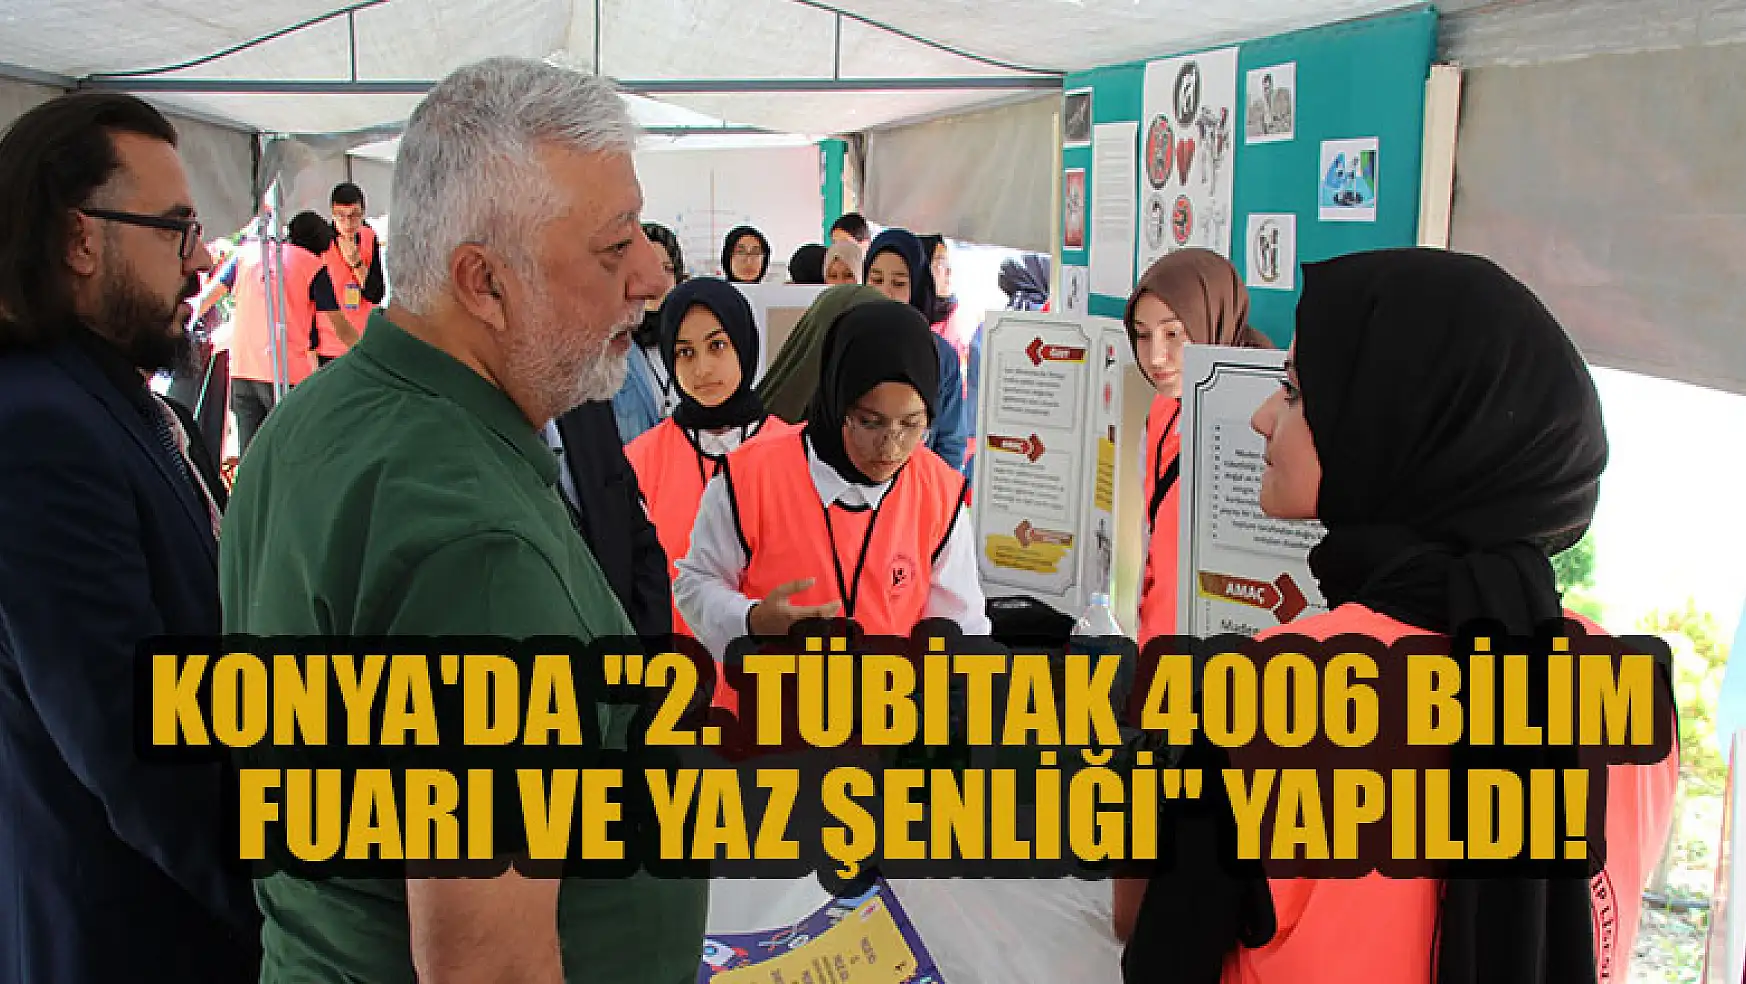 Konya'da '2. TÜBİTAK 4006 Bilim Fuarı ve Yaz Şenliği' yapıldı